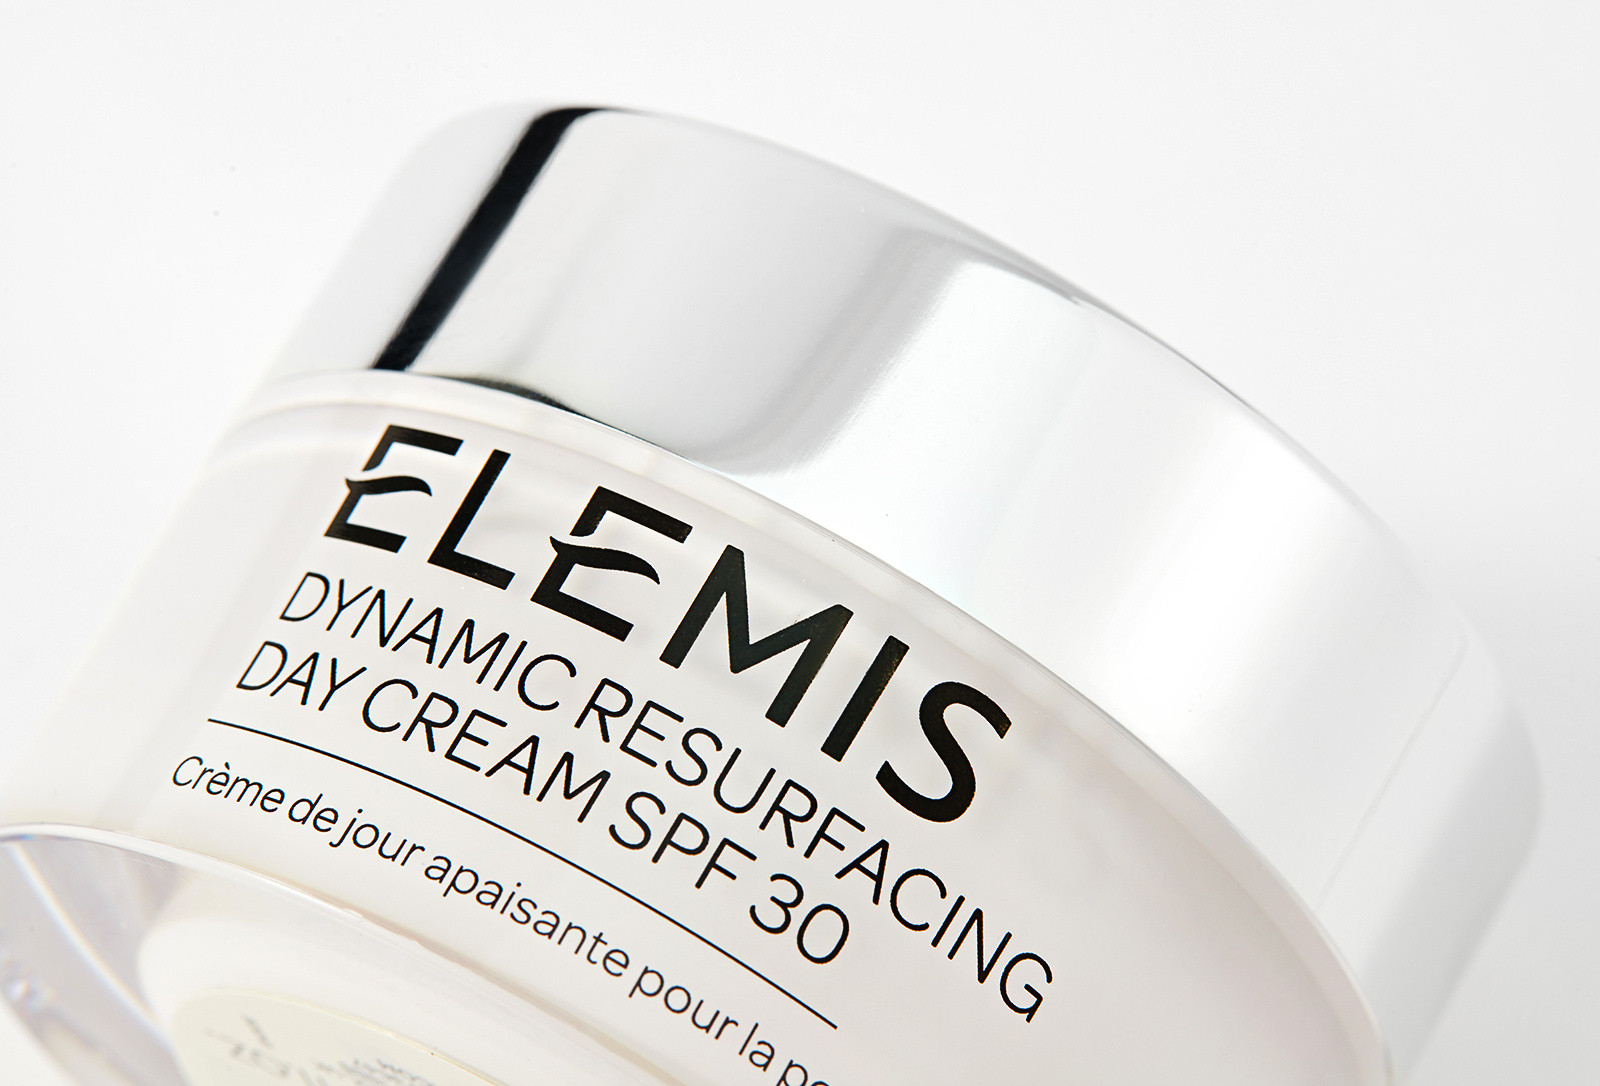 Дневной крем для лица Динамичная шлифовка Elemis Dynamic Resurfacing Day Cream SPF30